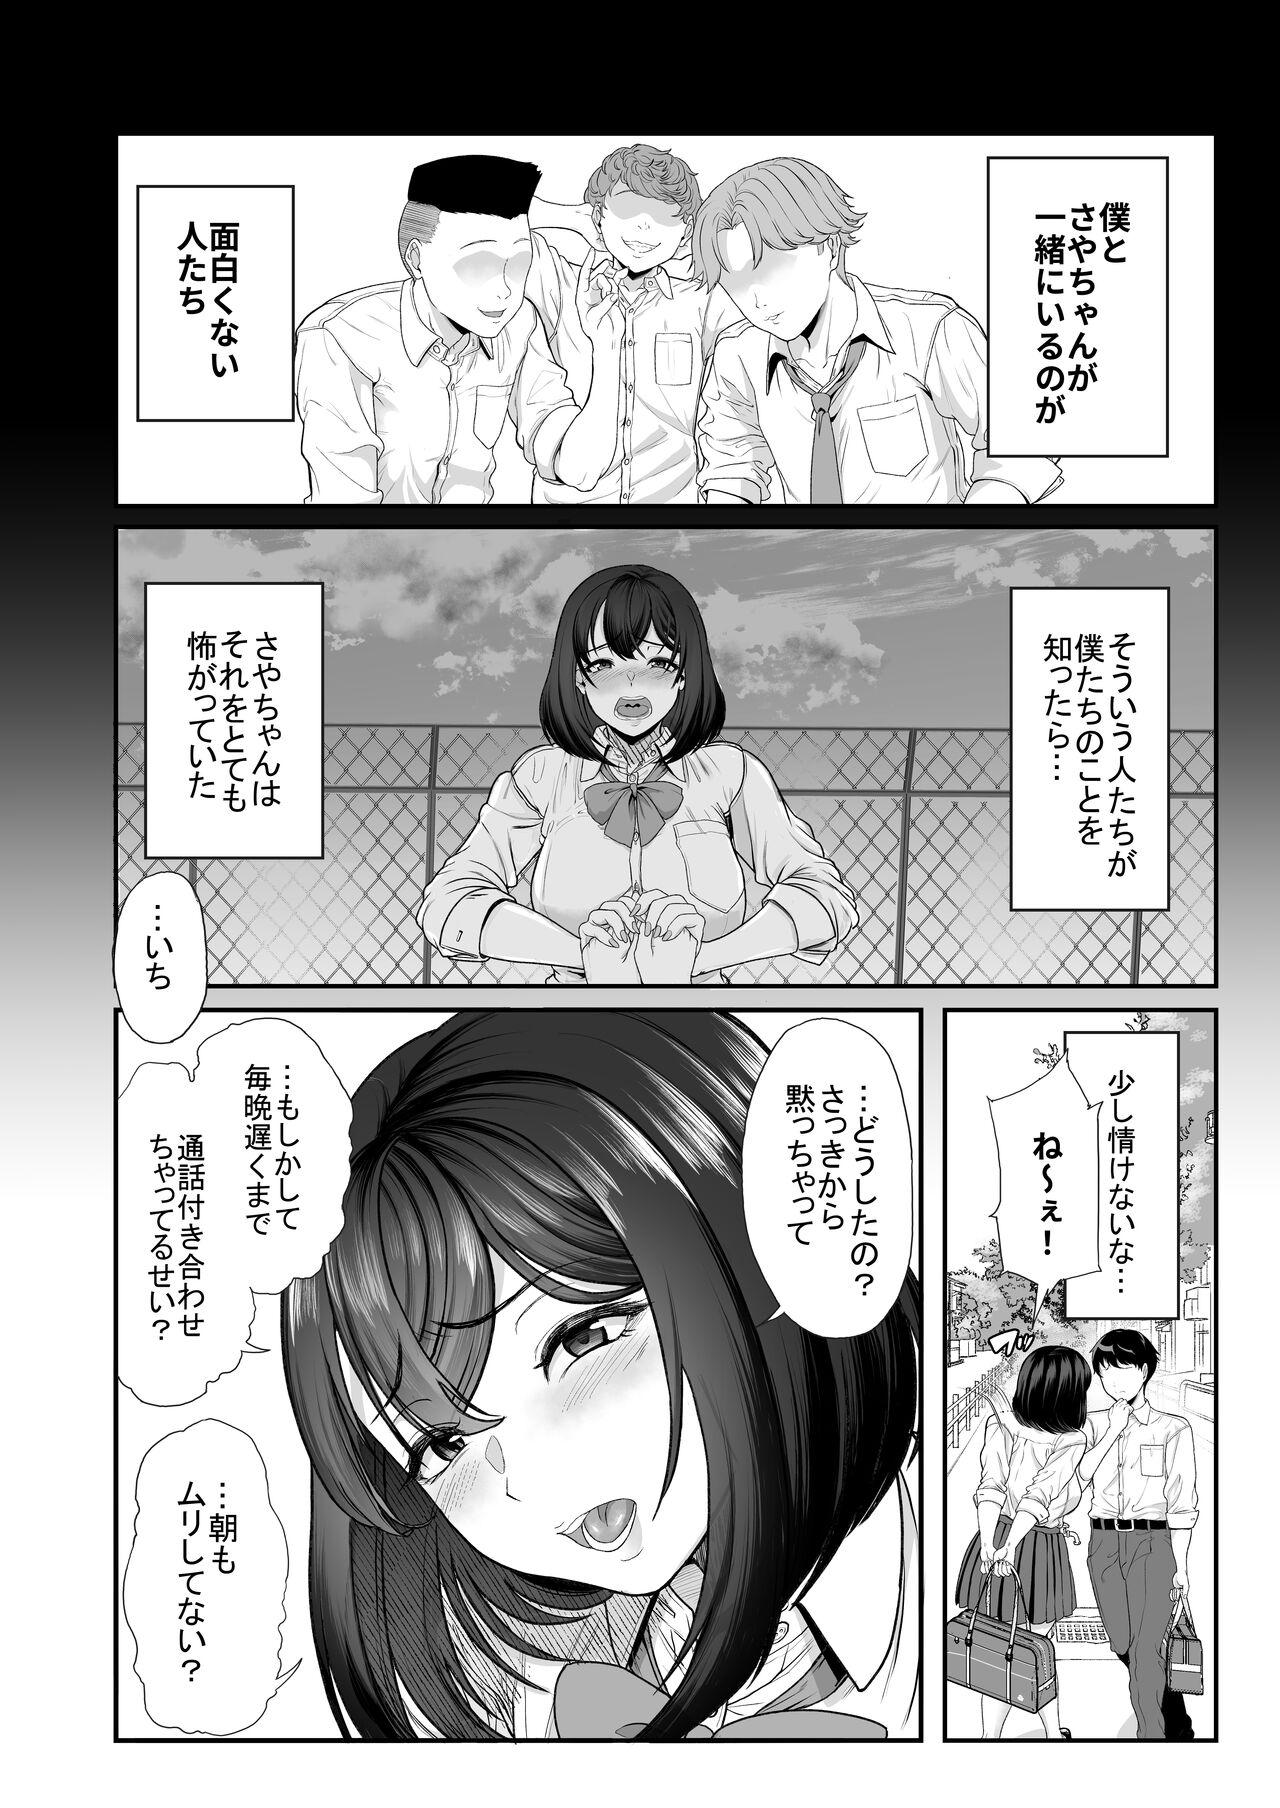 Teamskeet Suieibuno kanojoga shinyuuwo kobamenakunaru katei - Original Cuzinho - Page 7